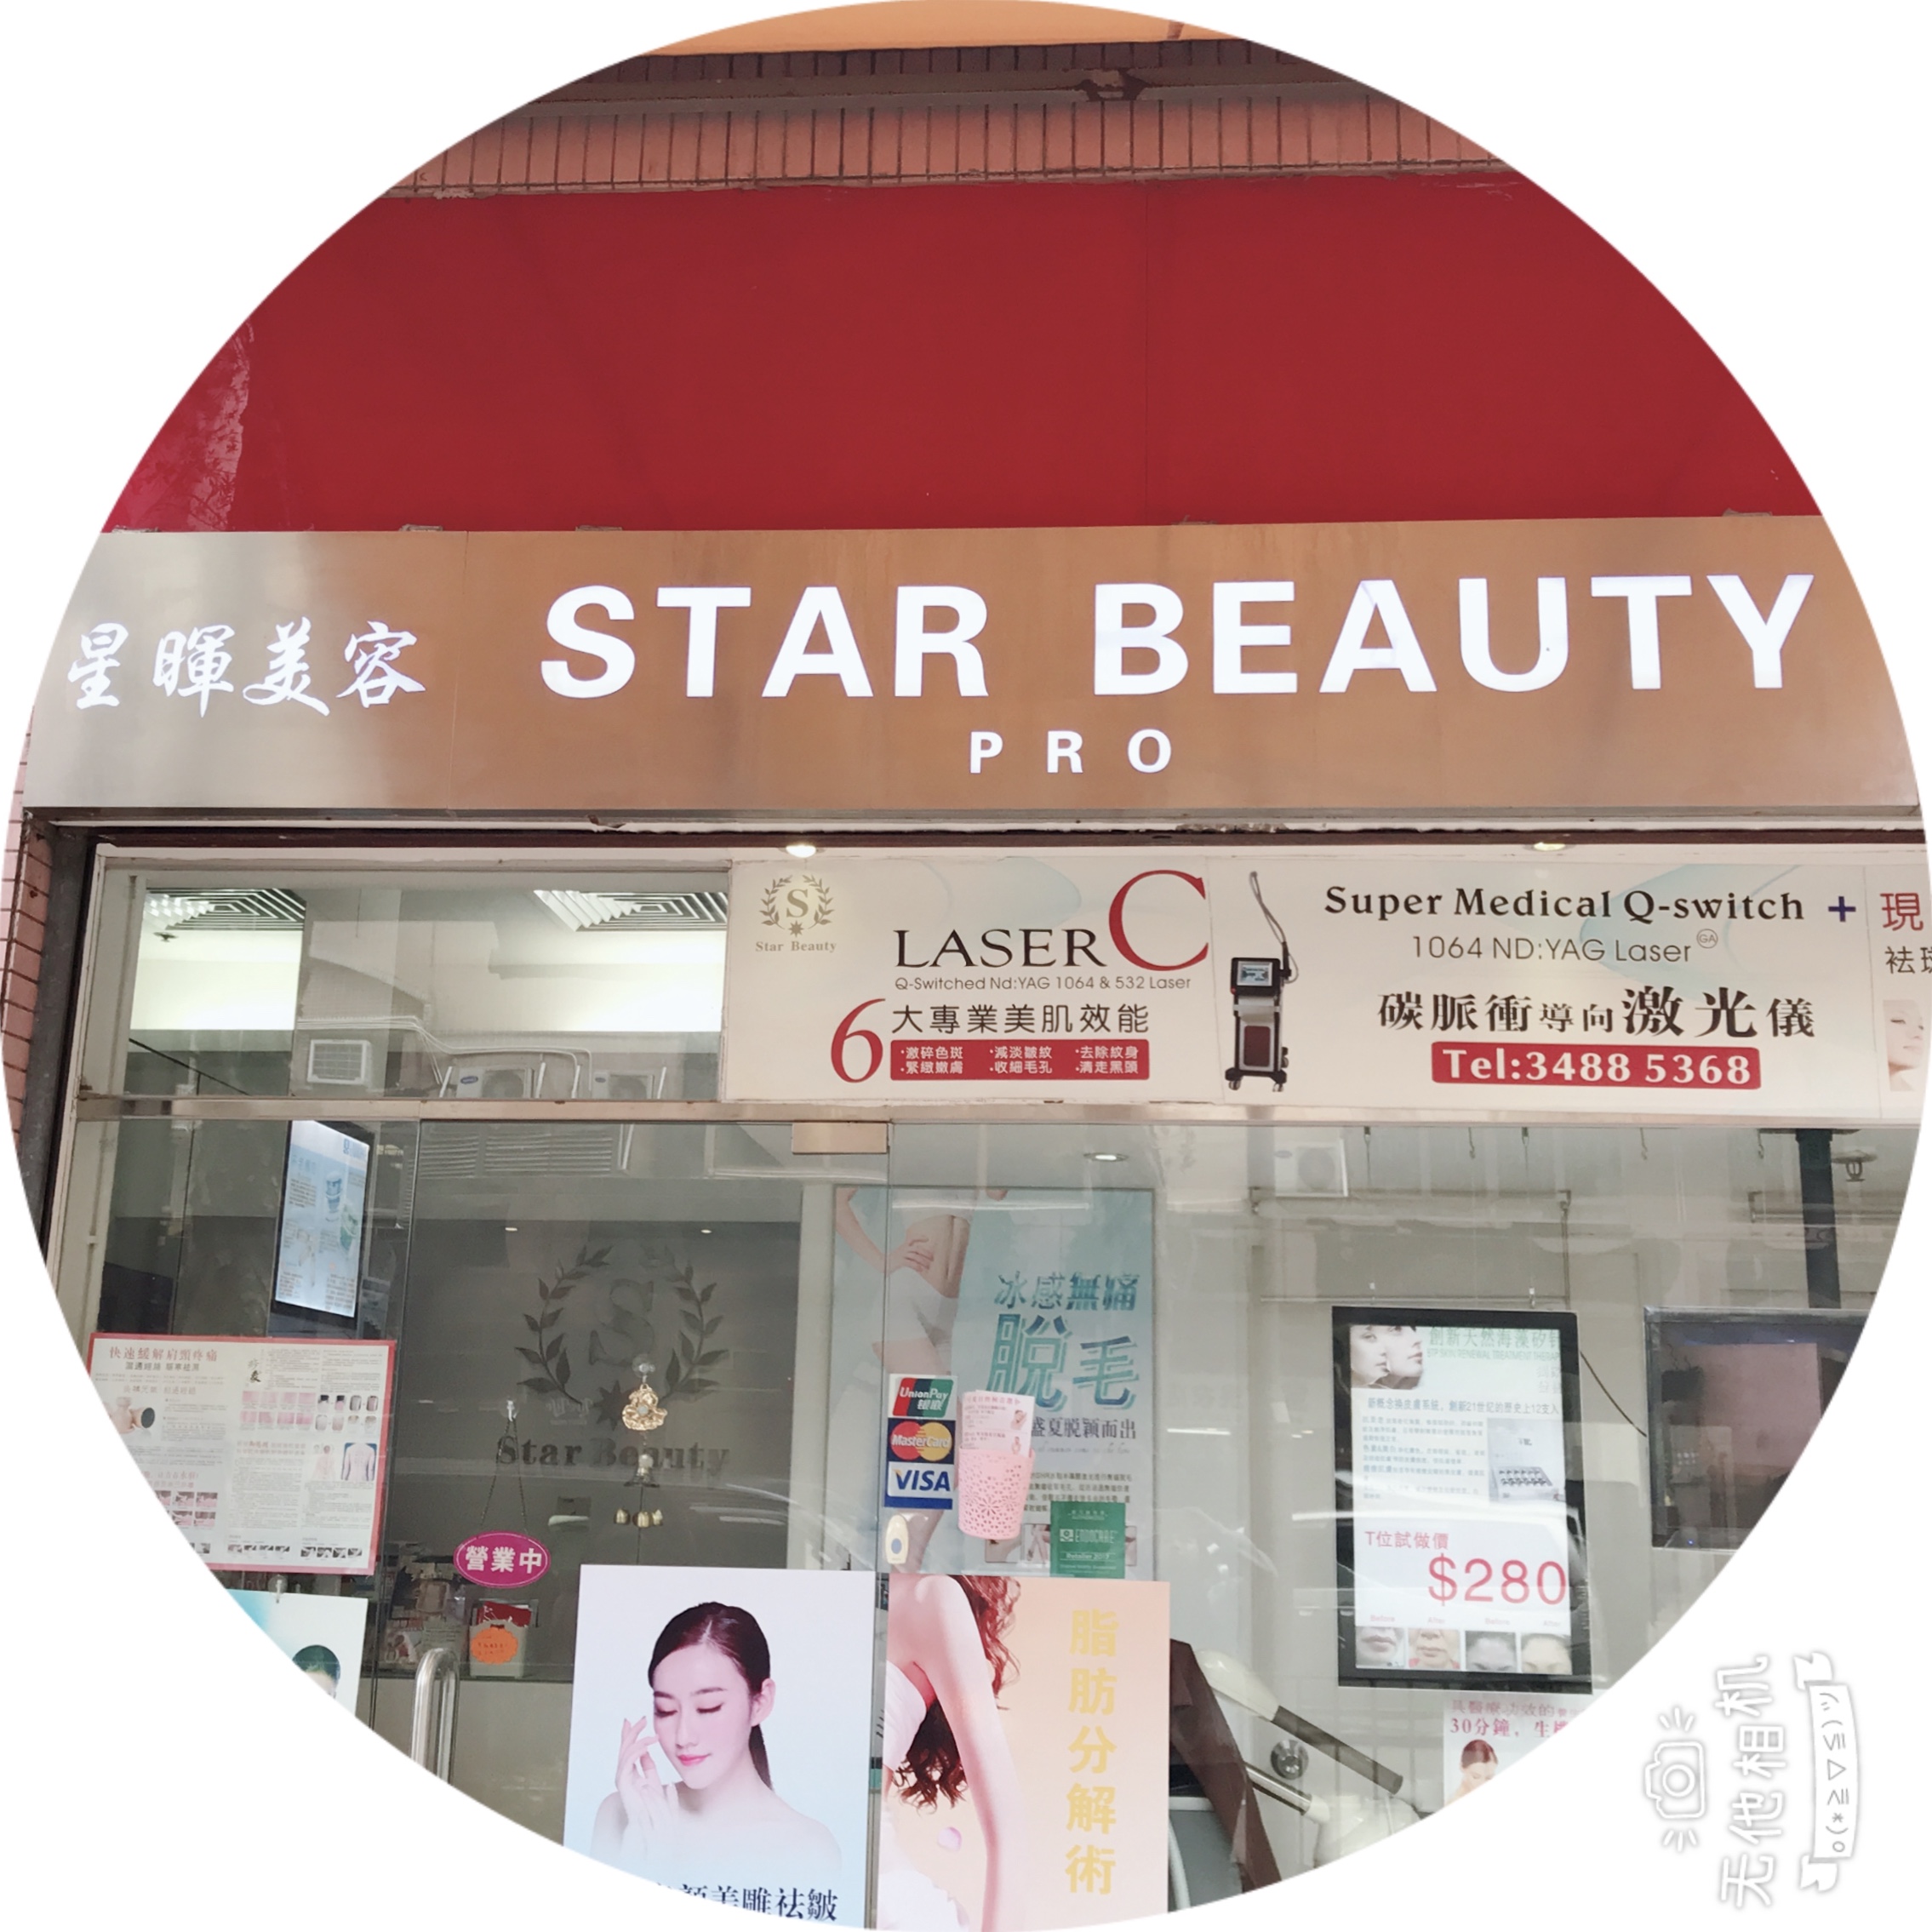 香港美容網 Hong Kong Beauty Salon 美容院 / 美容師: 星暉美容 STAR BEAUTY